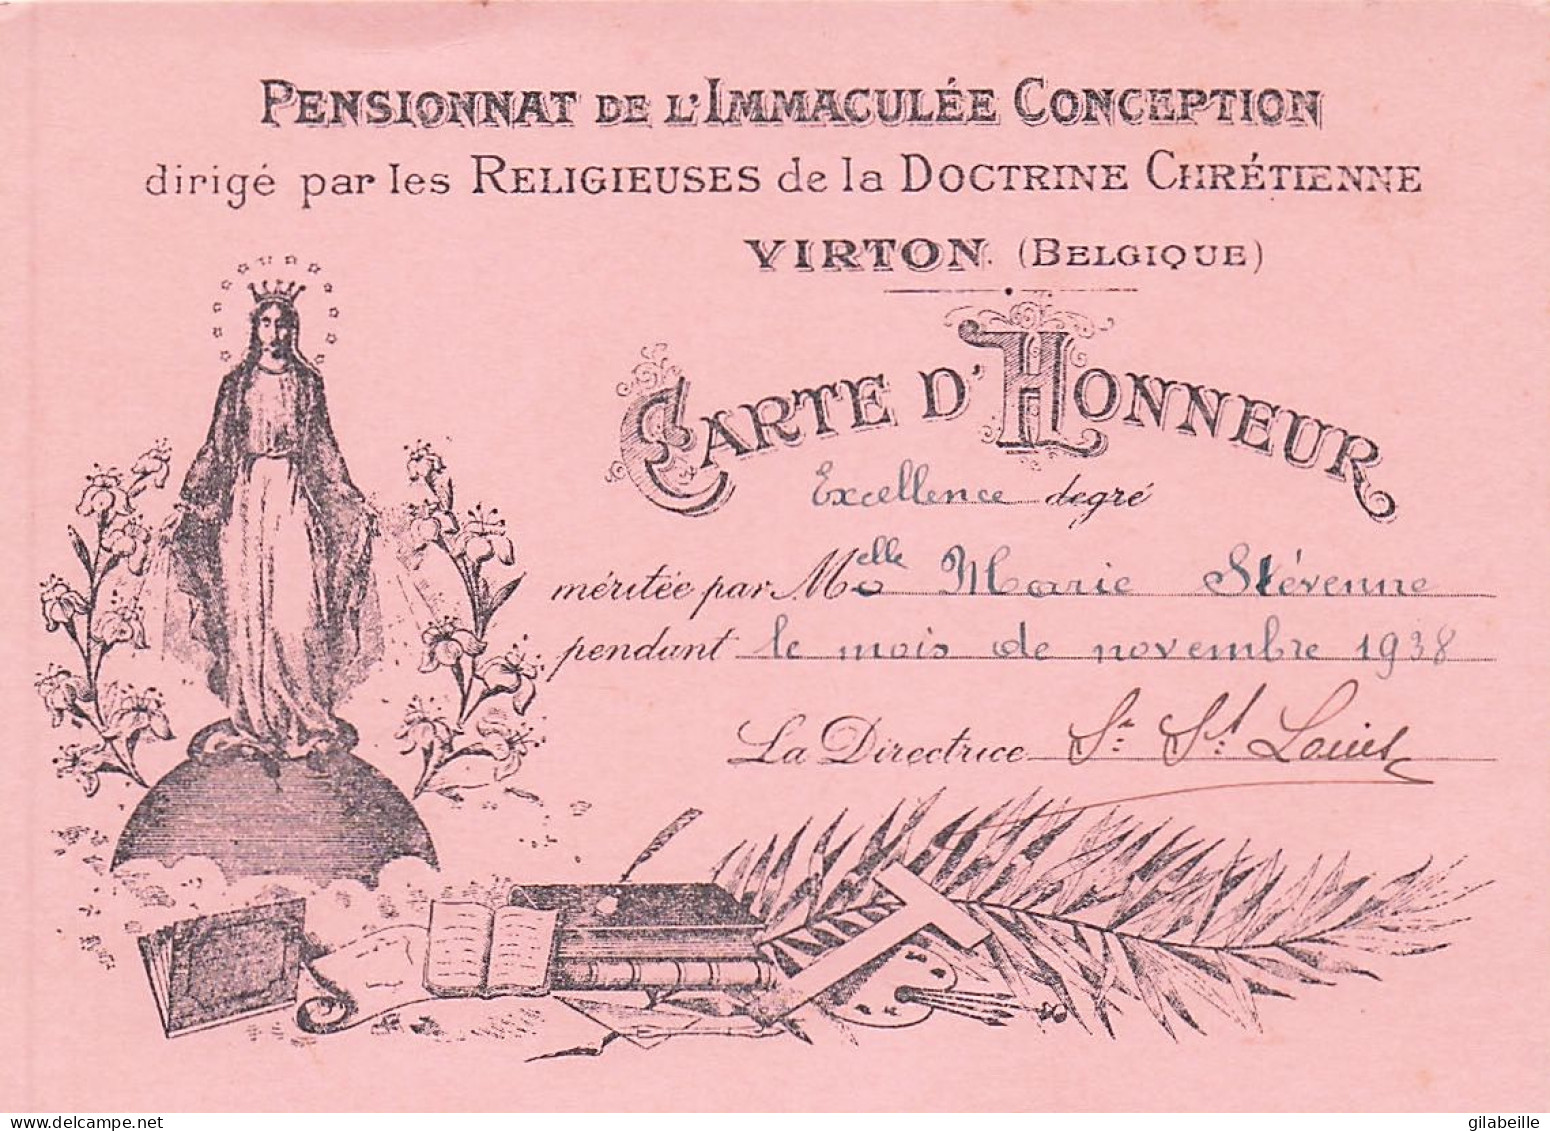 Luxembourg - VIRTON - Carte D'honneurdegré Excellence - Pensionnat De L'immaculé Conception - Novembre 1938 - Diplome Und Schulzeugnisse